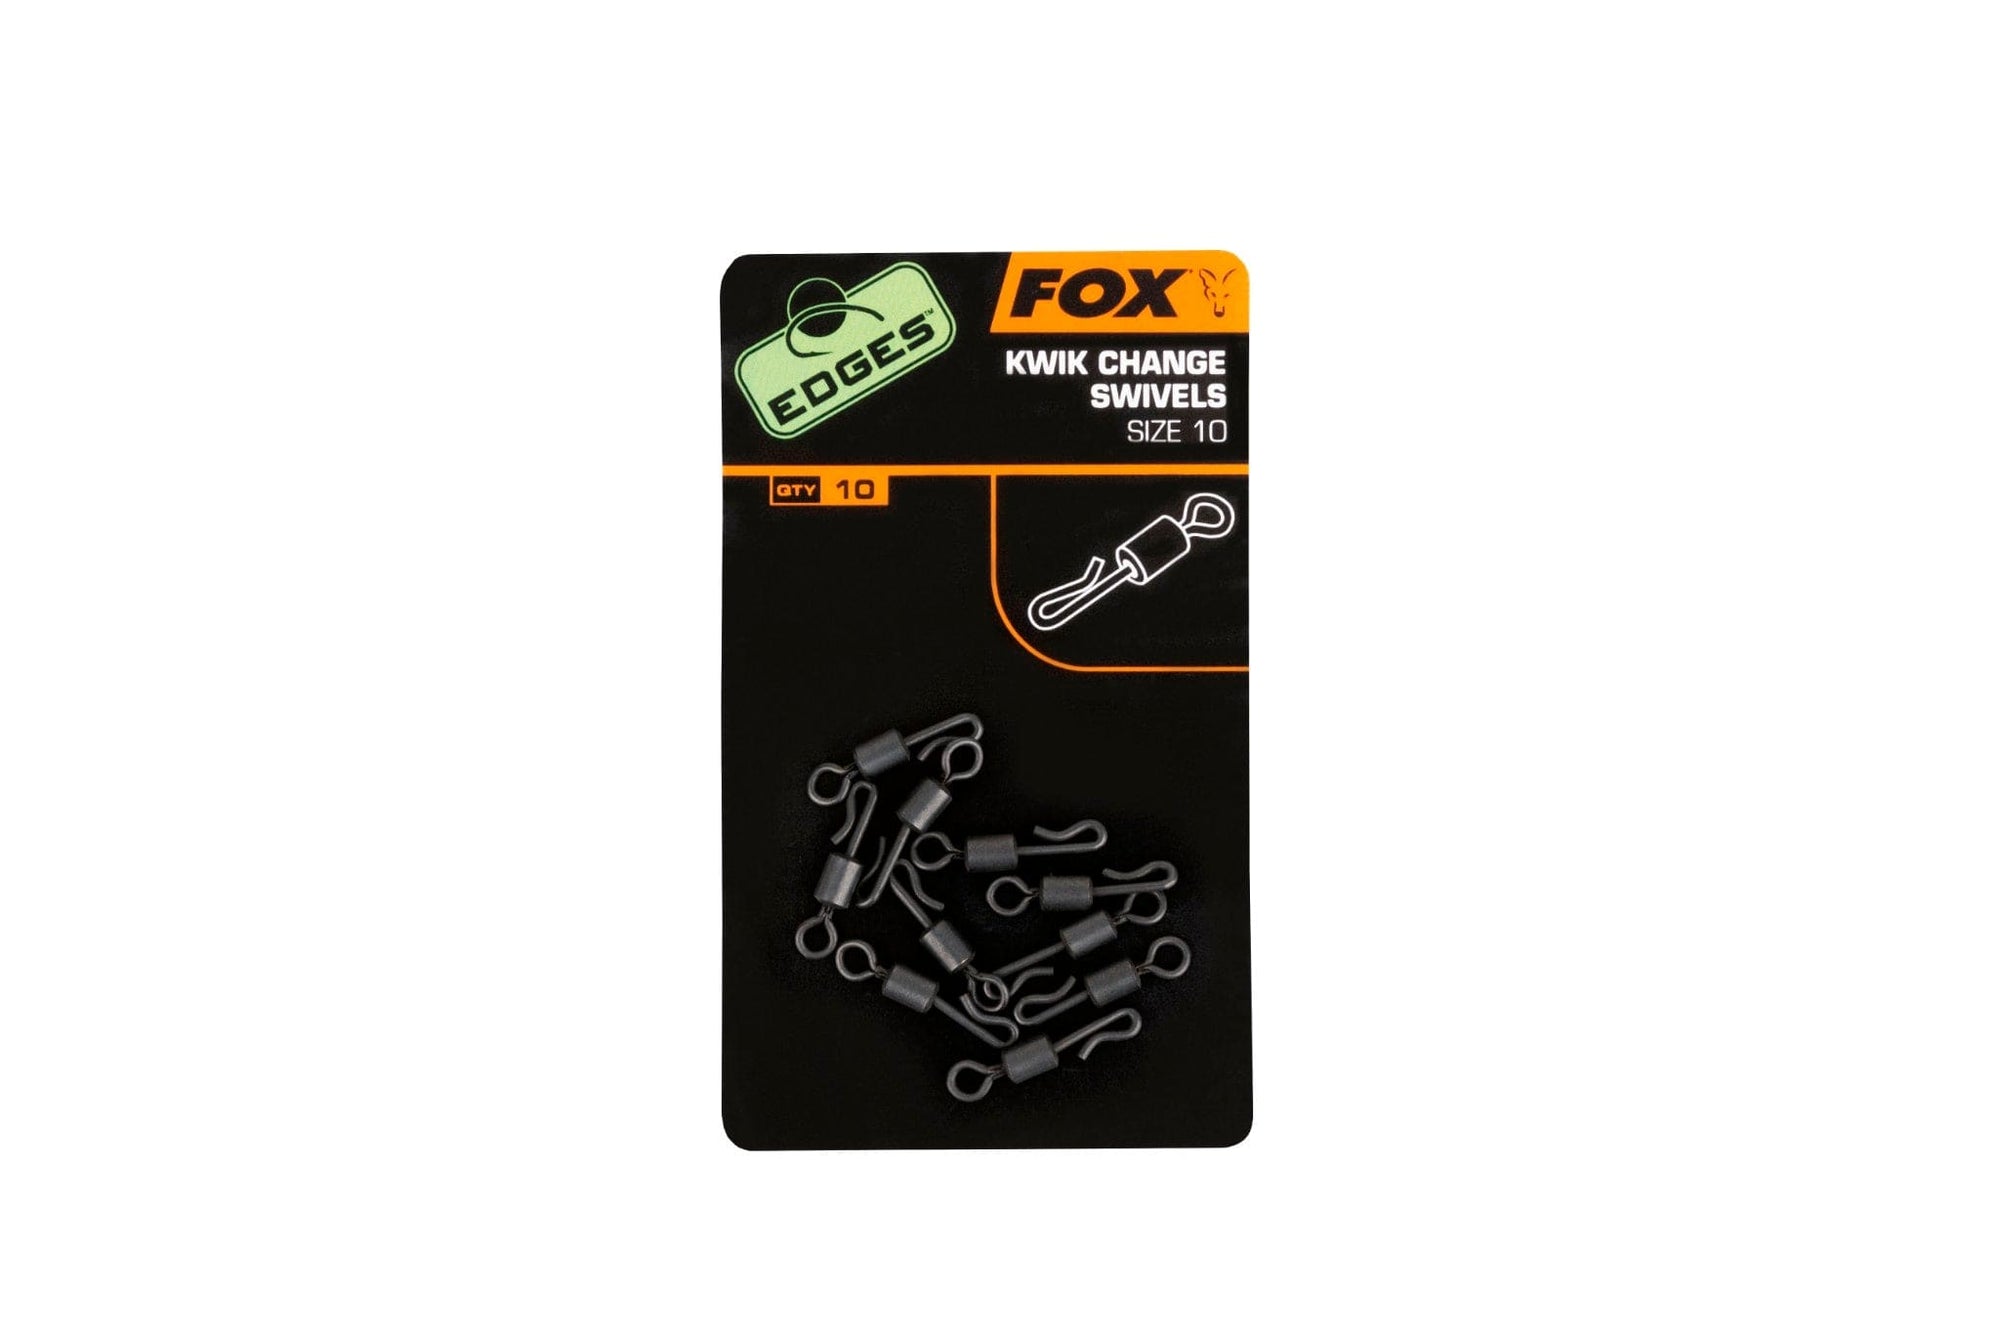 FOX Edges kwik change swivels size 10 x 10.